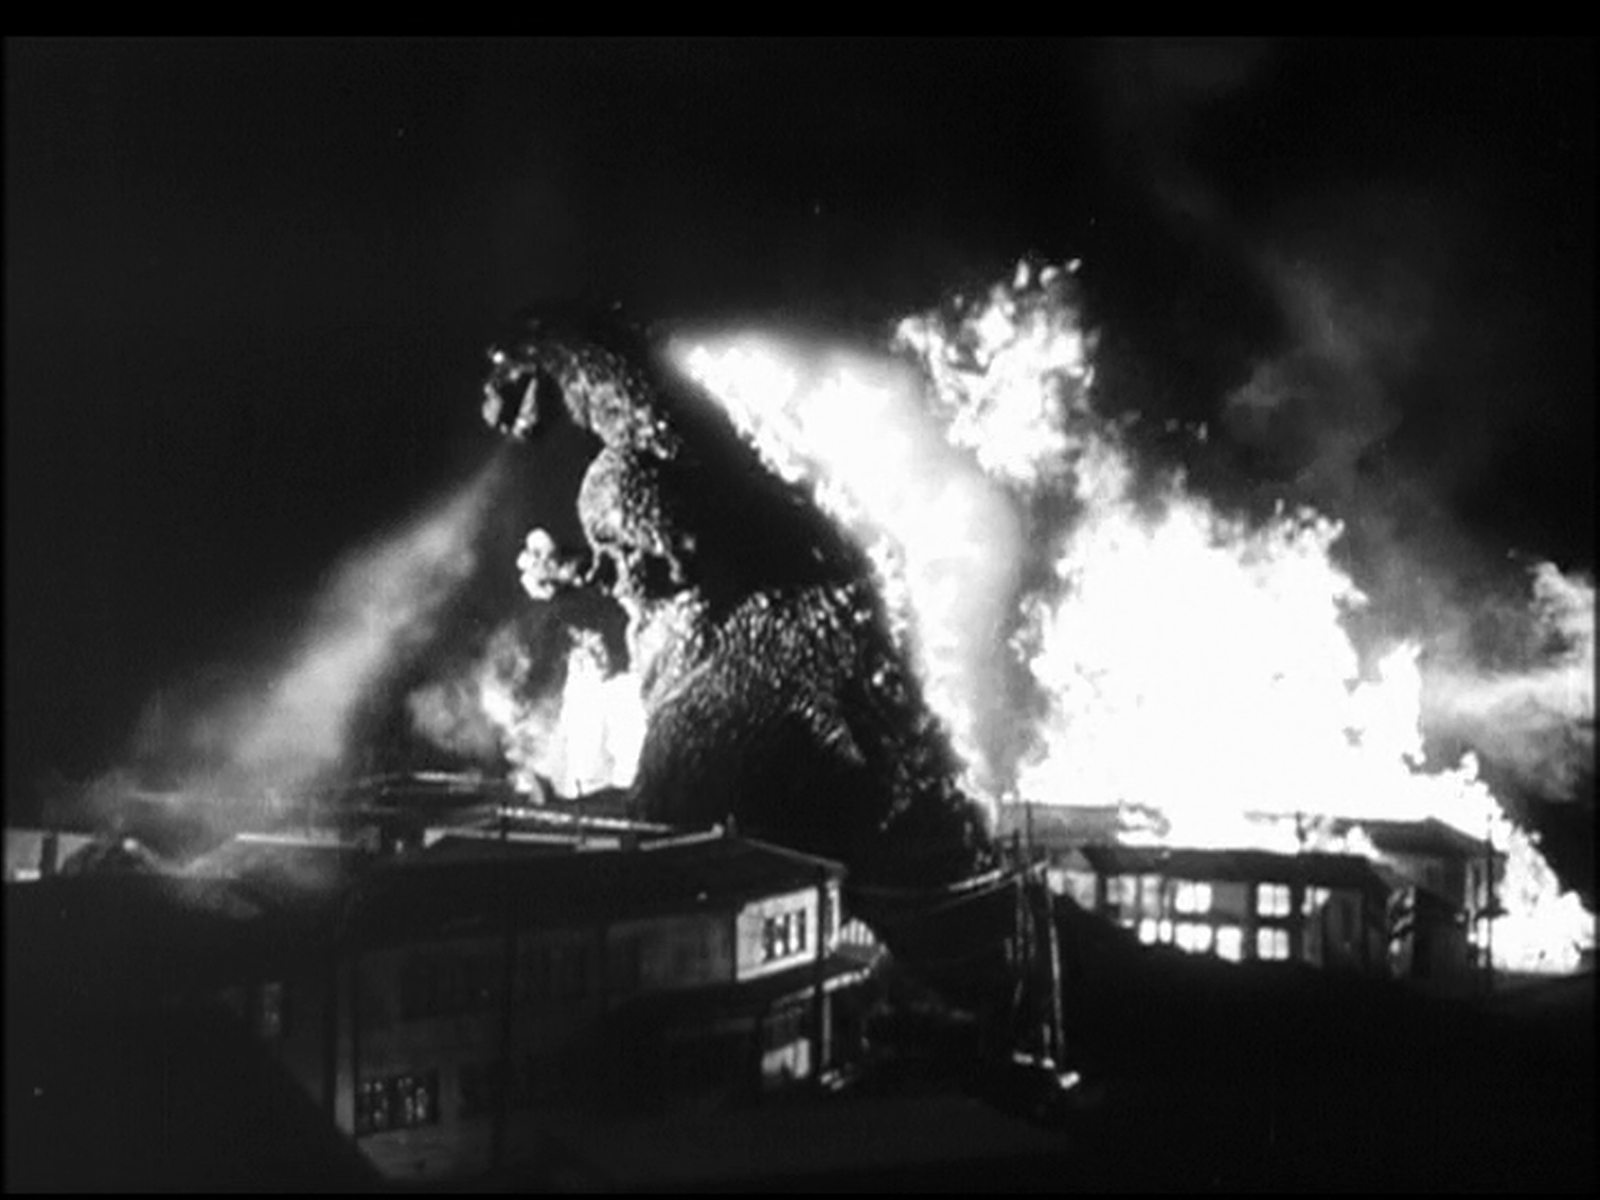 The Godzilla Cycle 初代ゴジラ Godzilla 1954